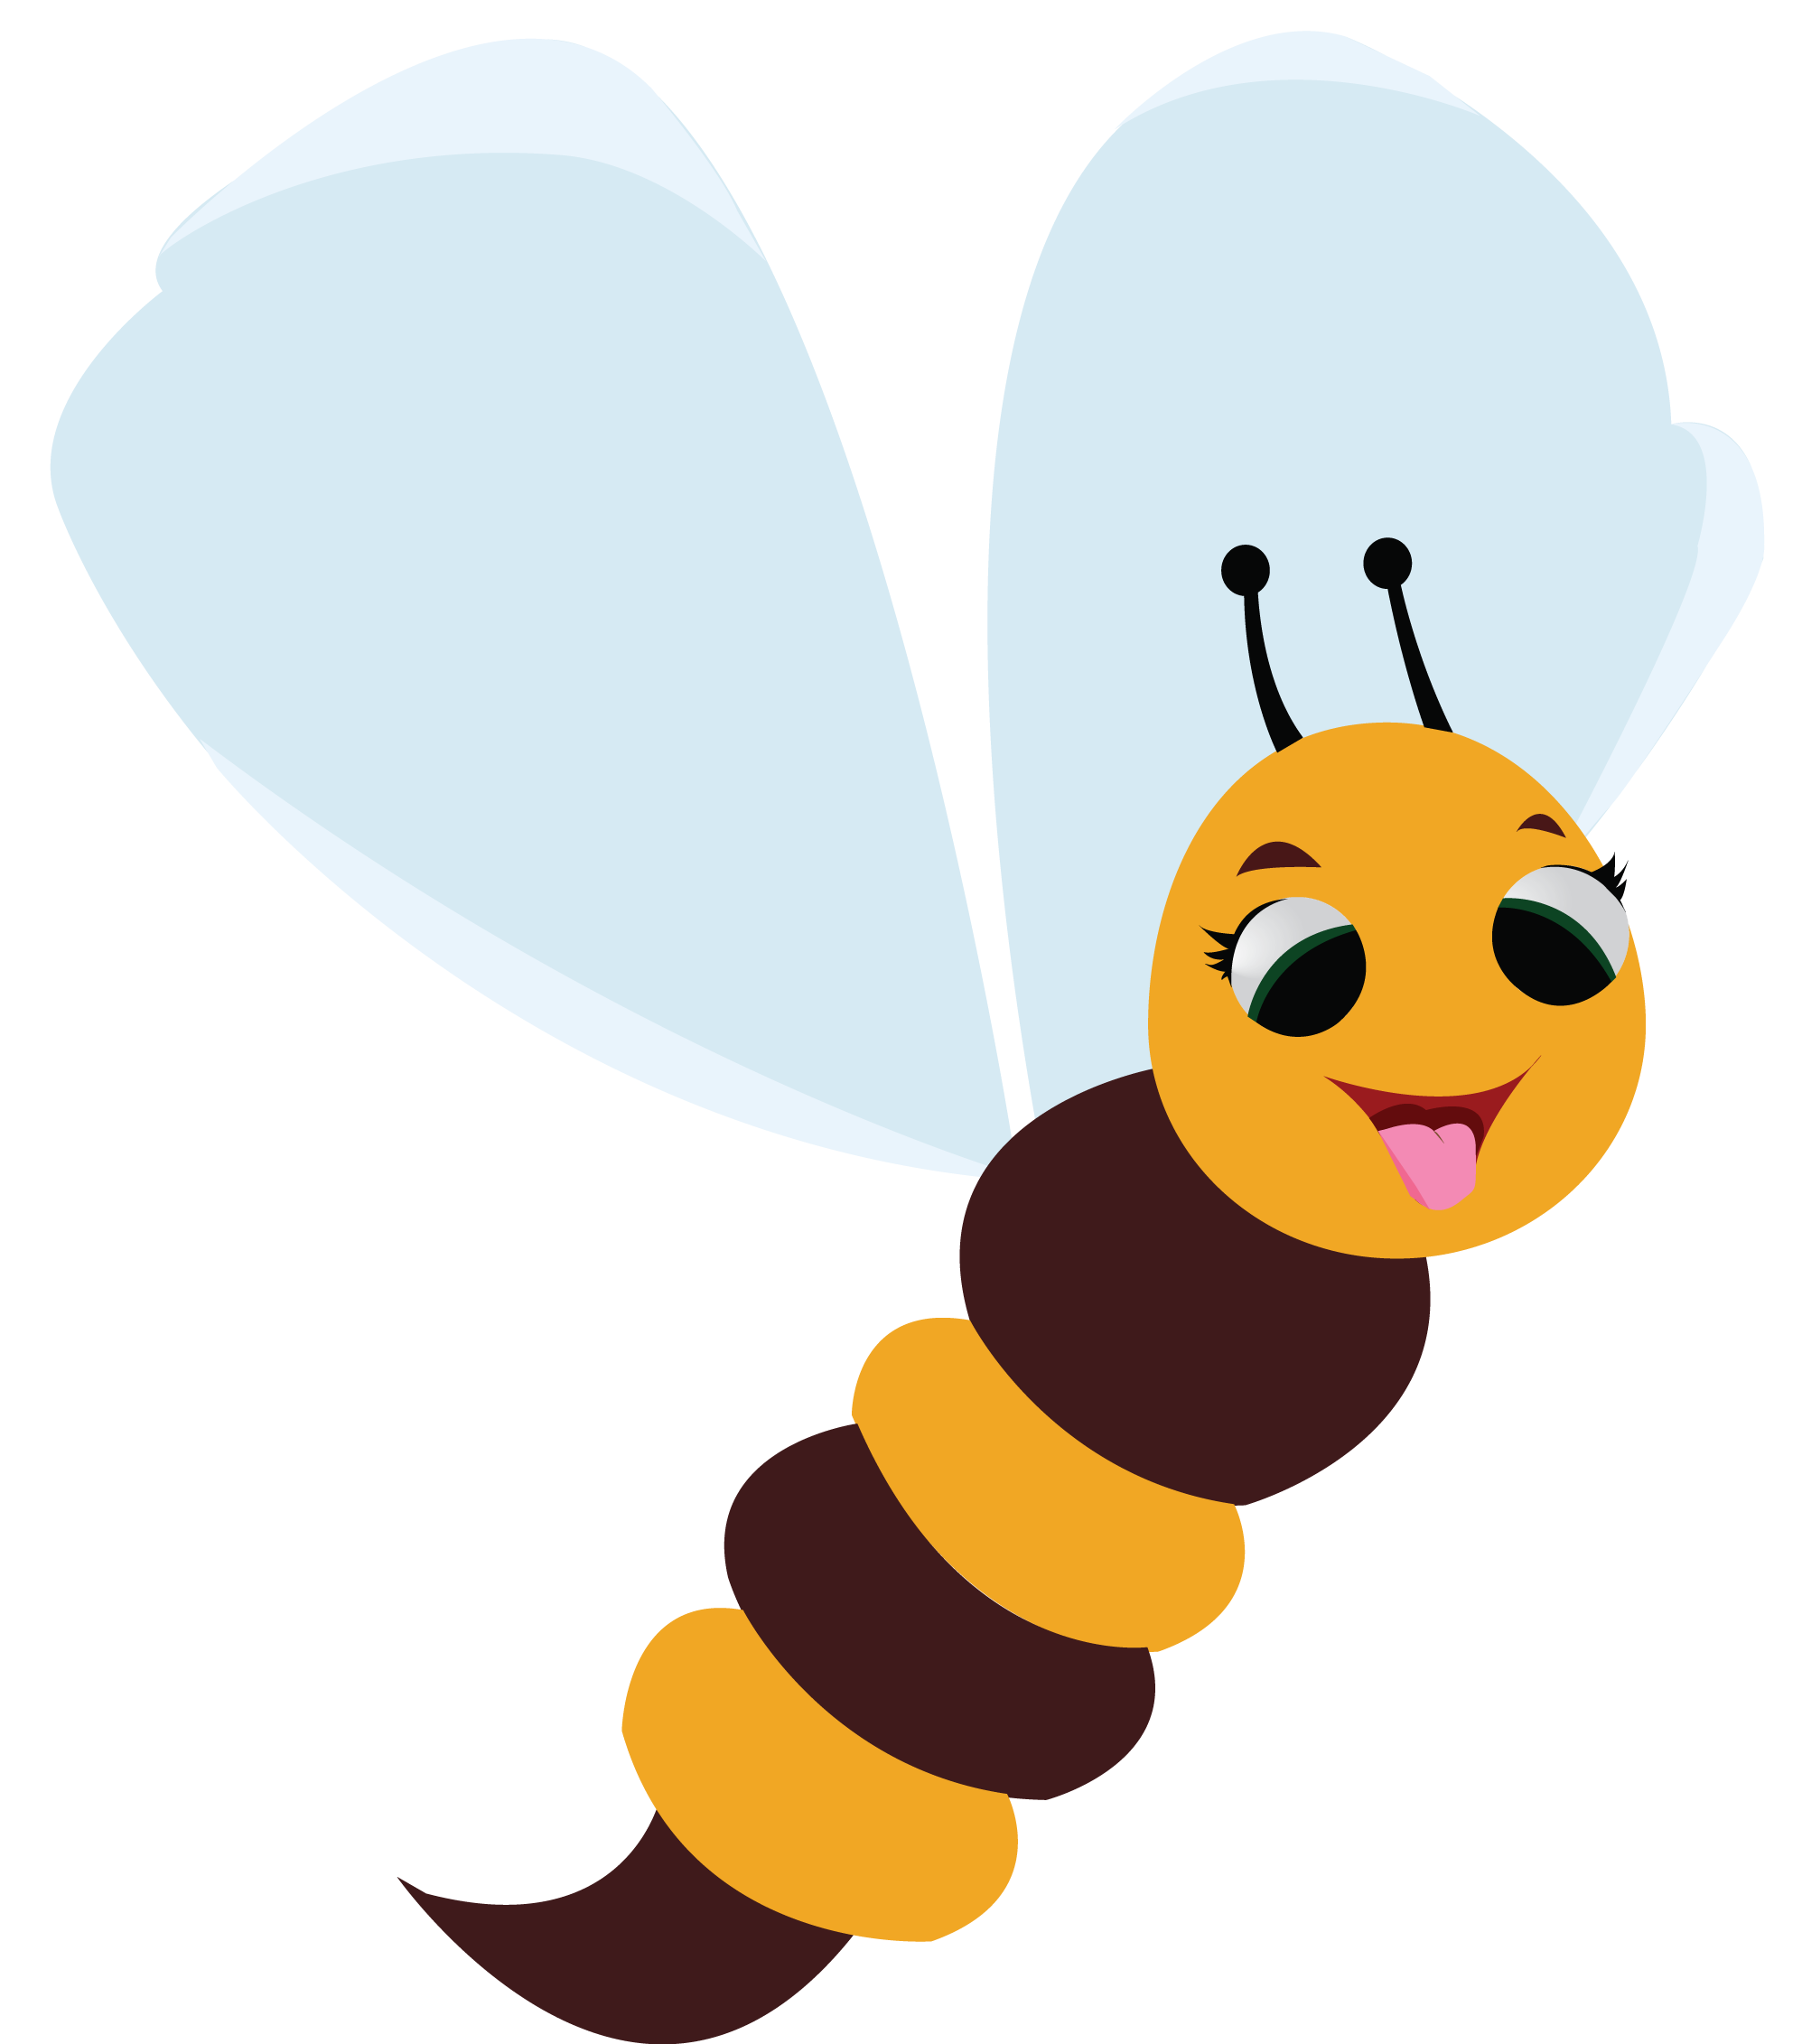 Honey Bee Cartoon Euclidean Vector - Portable Network Graphics (1995x2263)